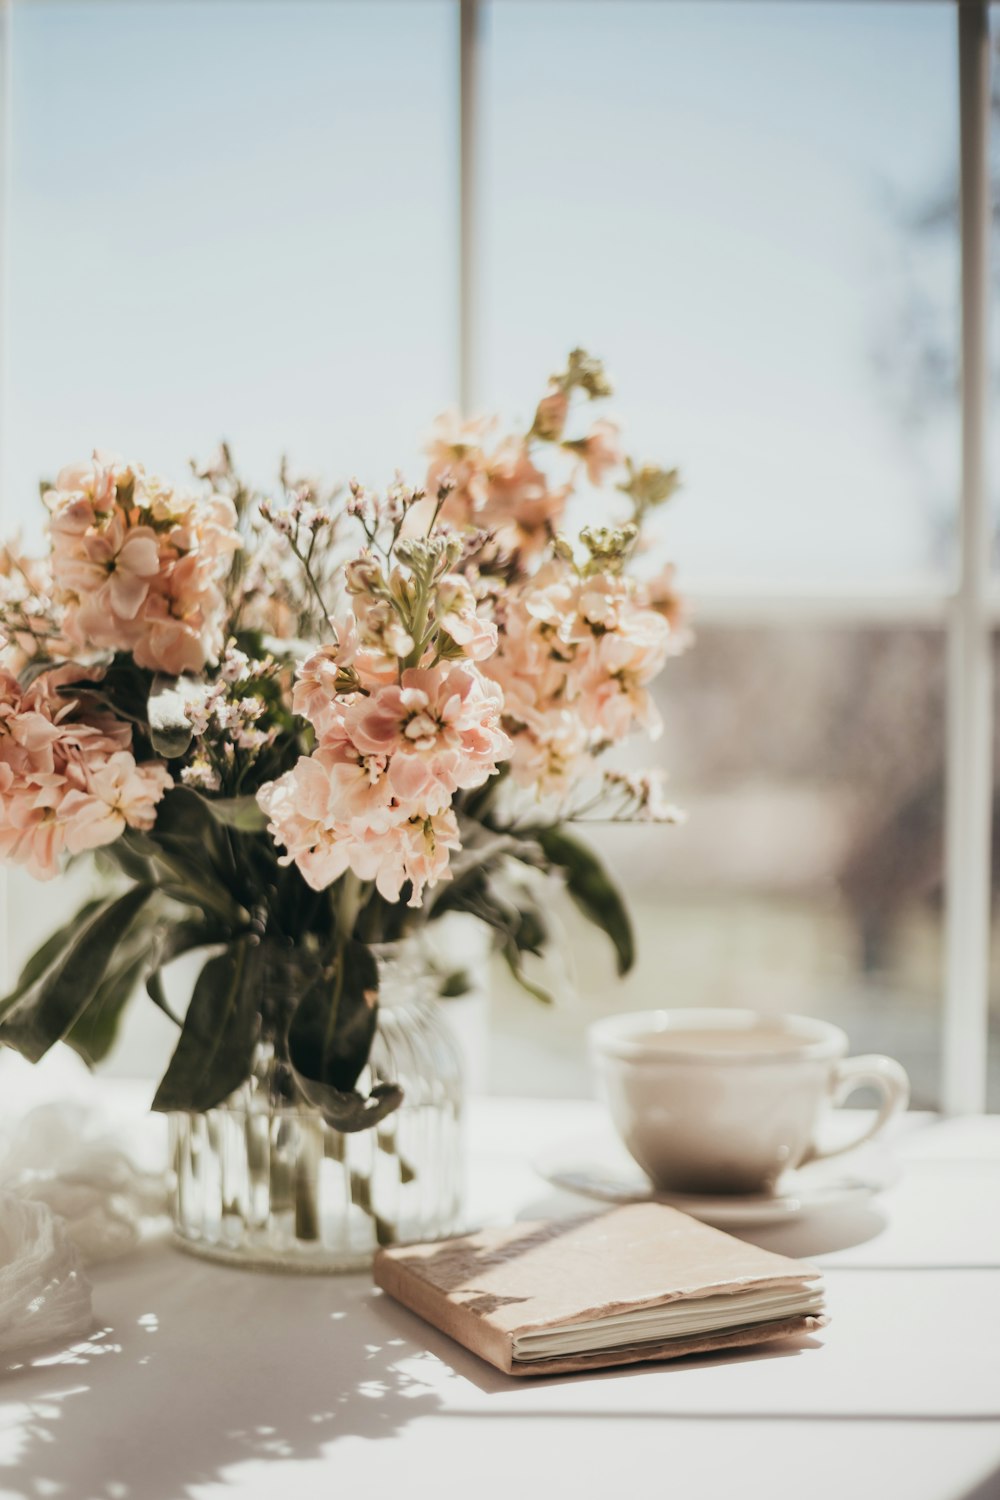 flores blancas y rosadas sobre taza de té de cerámica blanca sobre mesa blanca